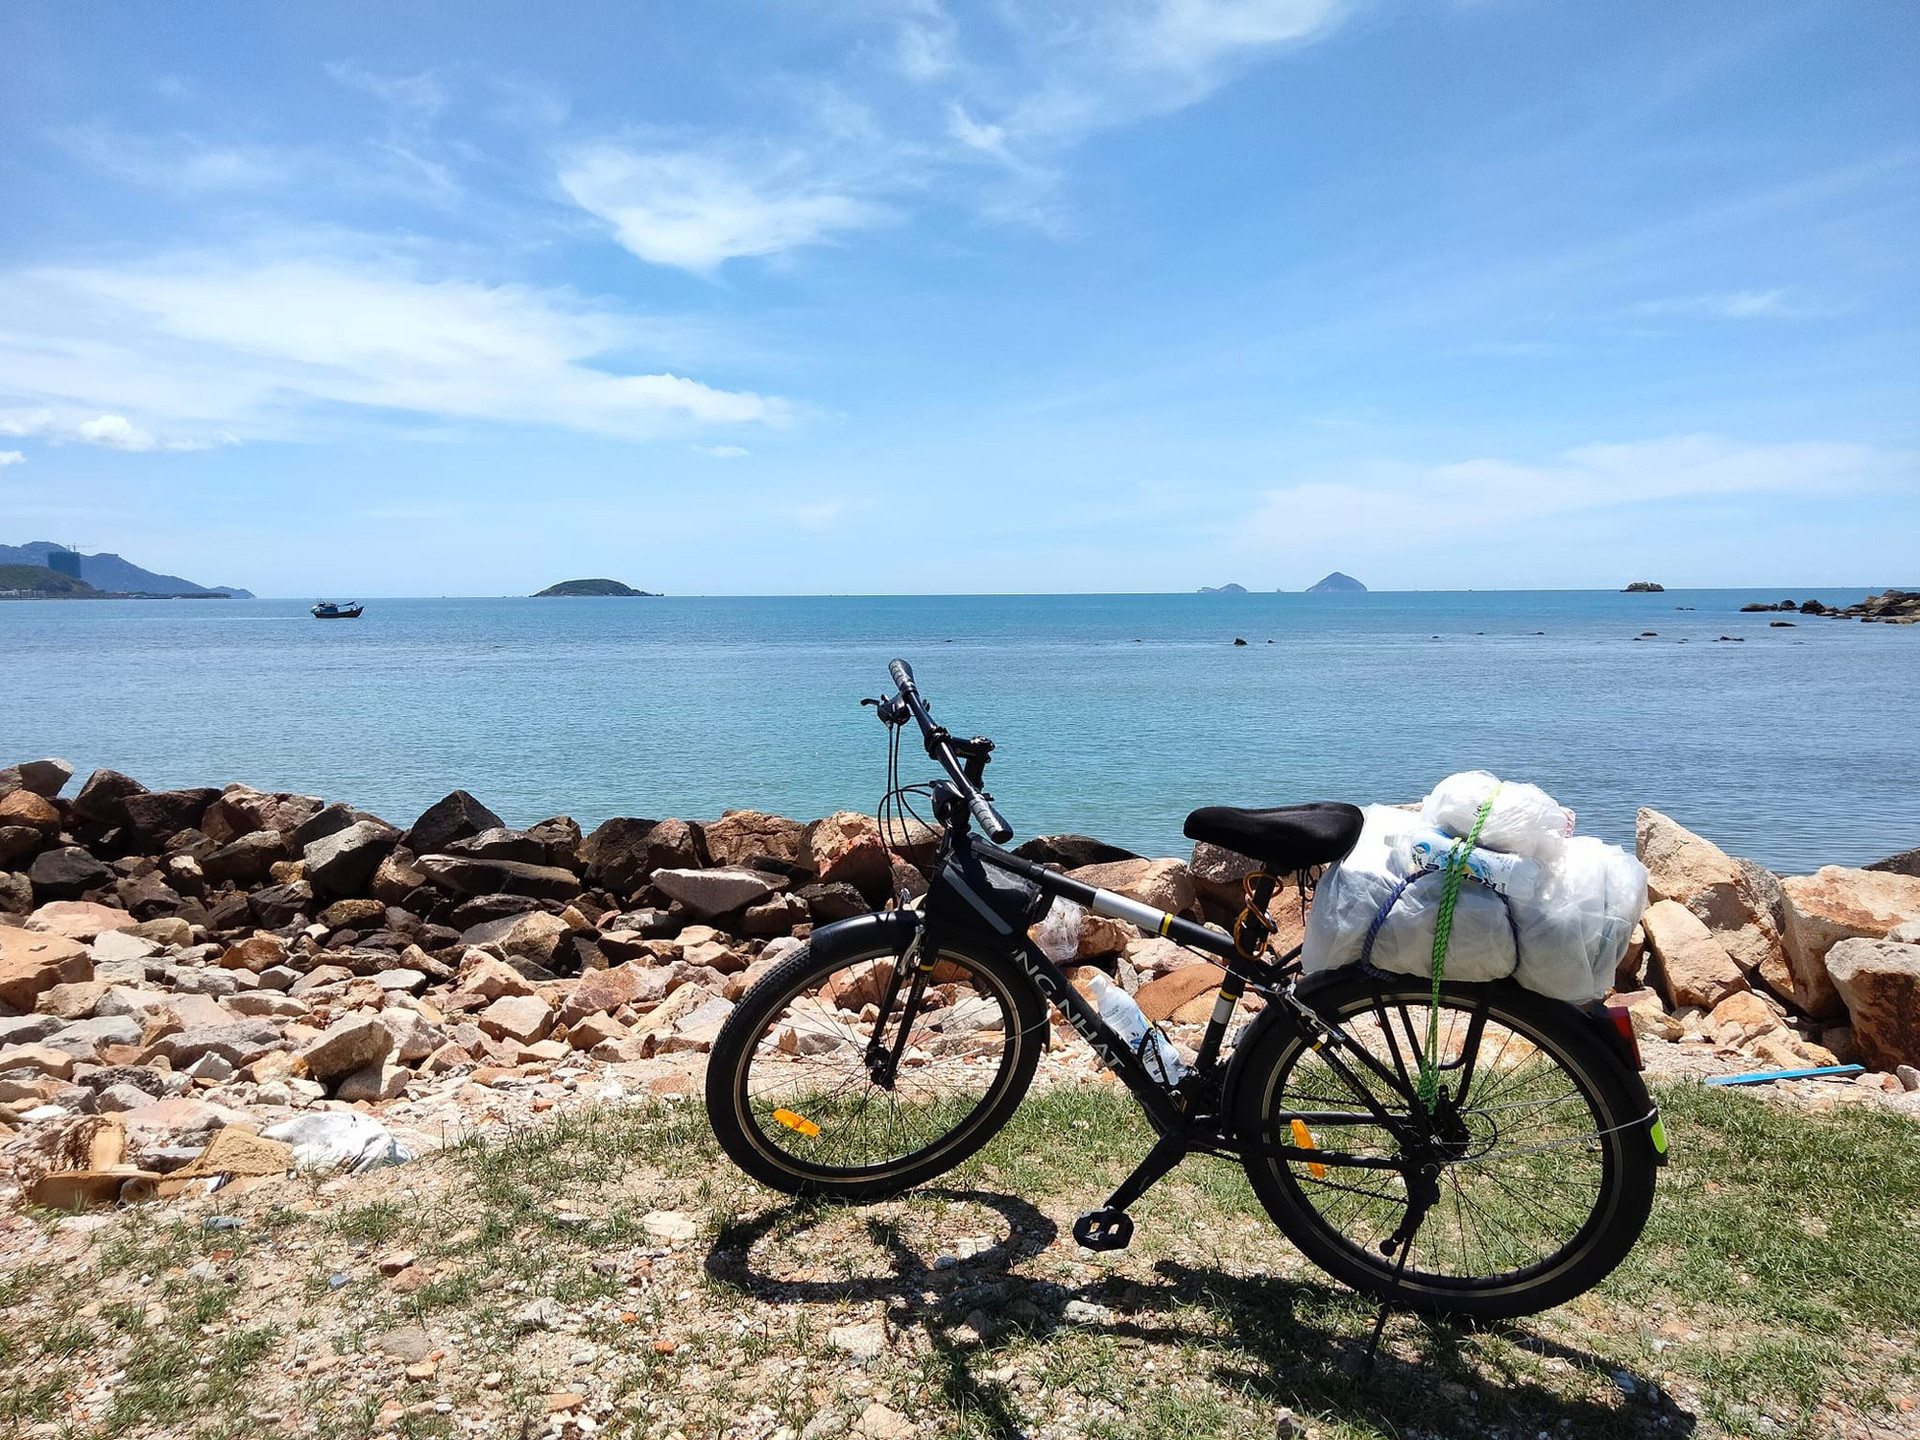 Nhà du khảo 61 tuổi một mình đạp xe 1.800km từ Bắc vào Nam: 'Đi để thấy Việt Nam mình tươi đẹp' - Ảnh 2.